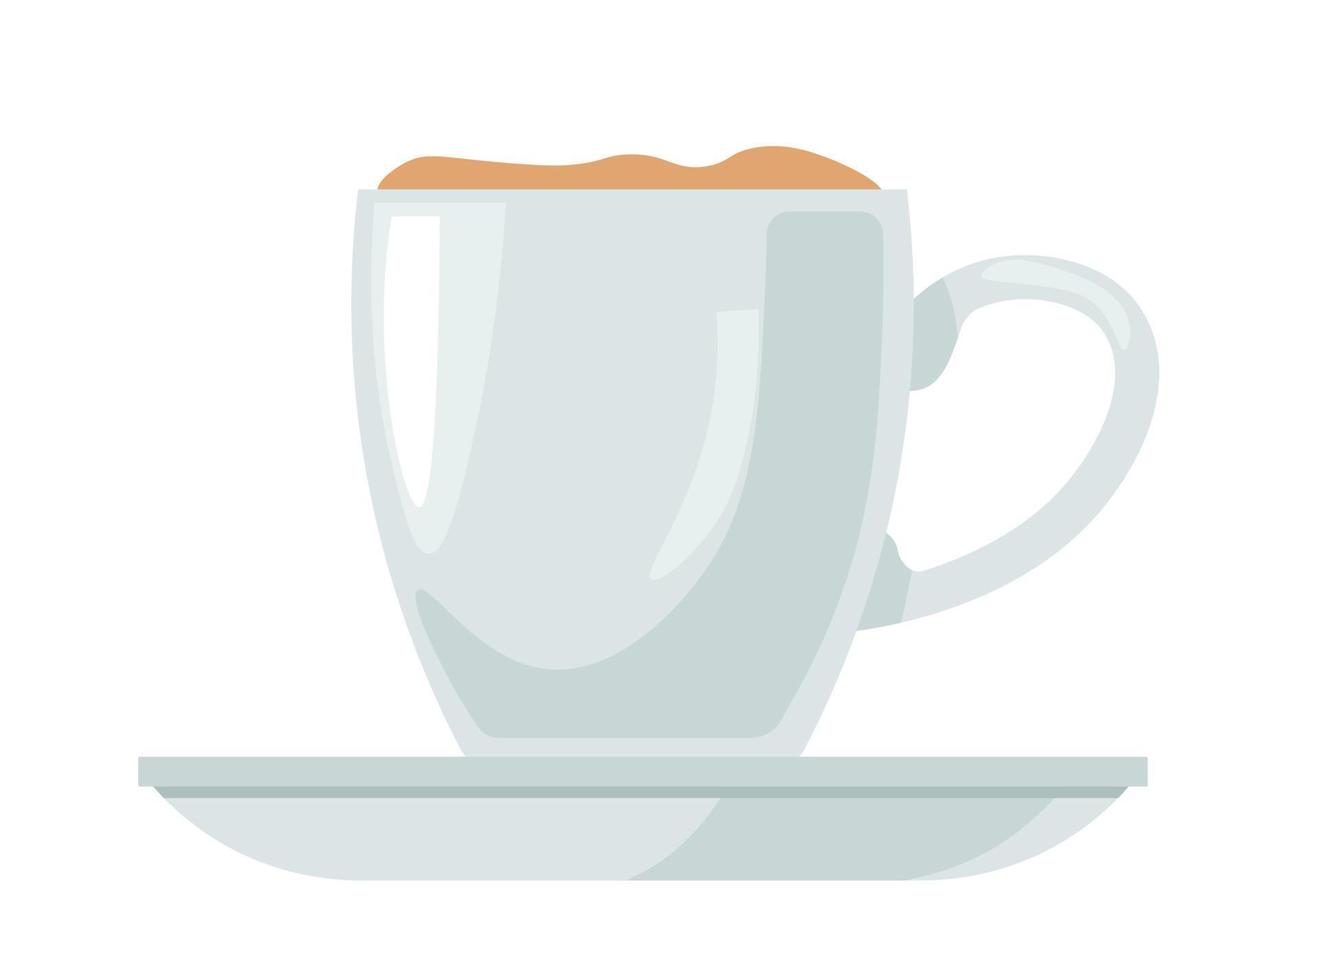 boisson au café servie dans une tasse avec vecteur de soucoupe